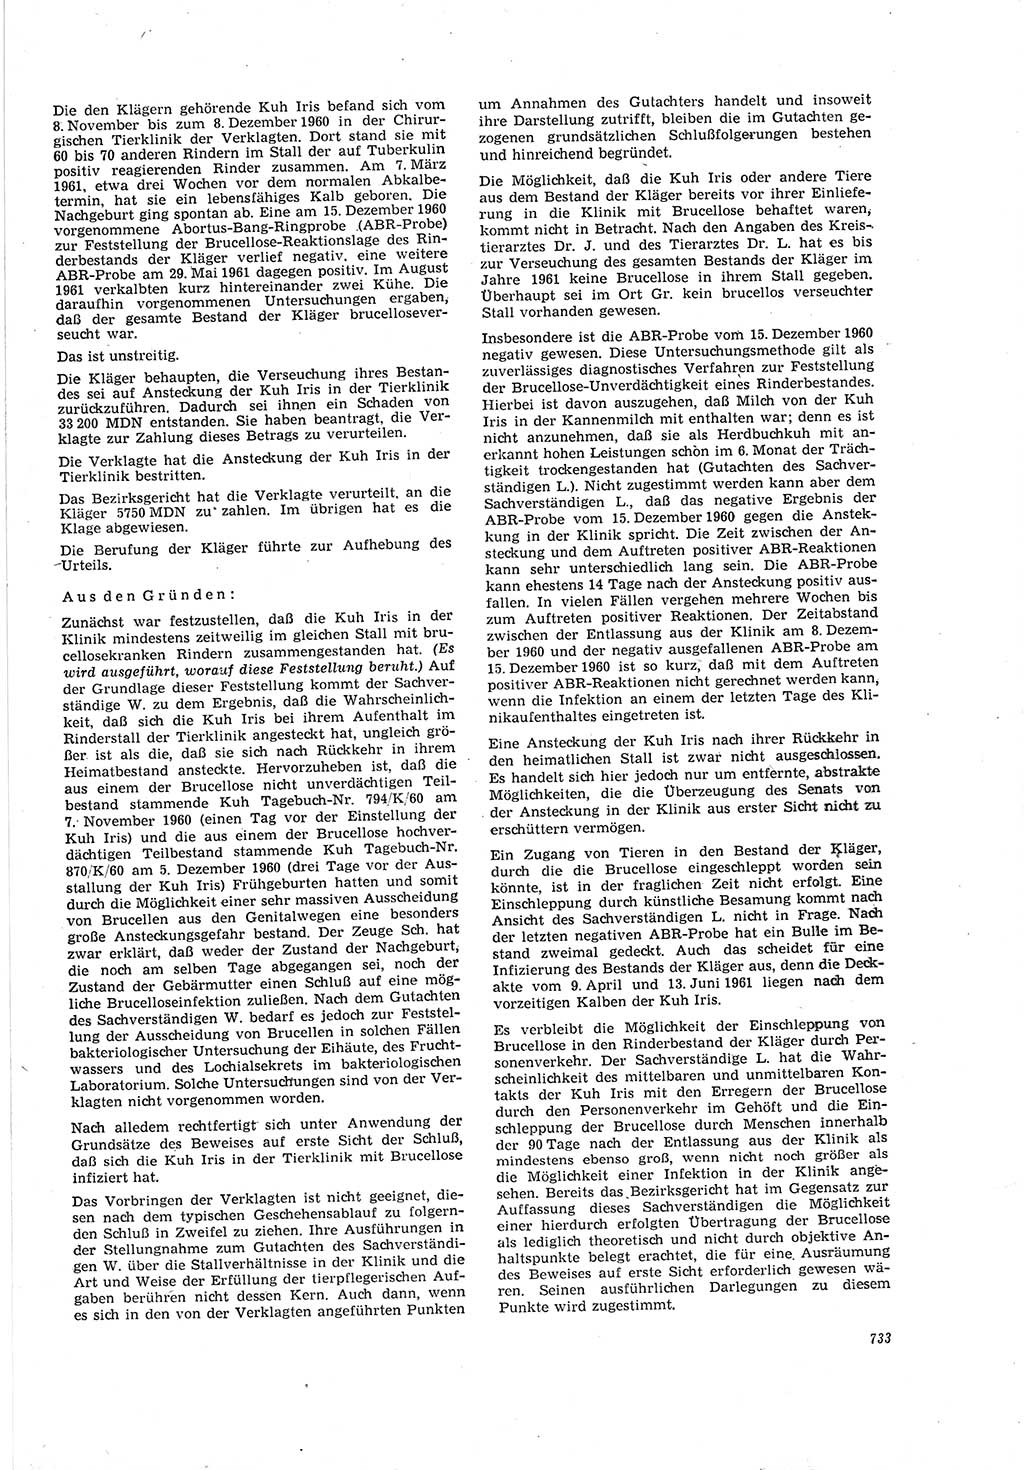 Neue Justiz (NJ), Zeitschrift für Recht und Rechtswissenschaft [Deutsche Demokratische Republik (DDR)], 20. Jahrgang 1966, Seite 733 (NJ DDR 1966, S. 733)